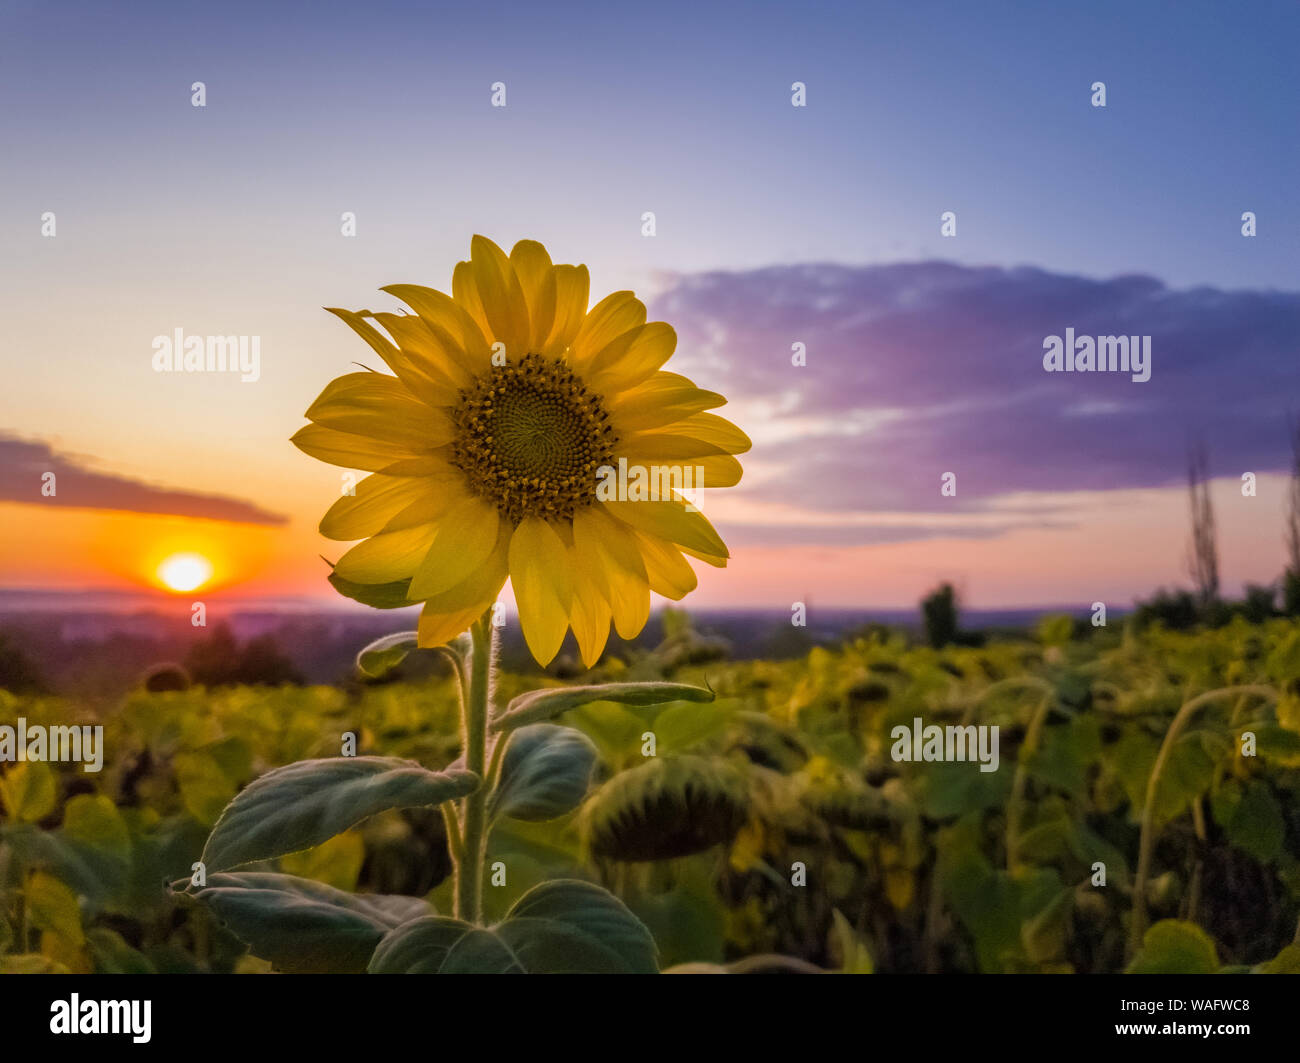 Sonnenblume Ernte Feld über Sonnenuntergang Himmel Hintergrund. Single Spät blühende Pflanze unter die Ernte von Sonnenblumen in einem goldenen Herbst Abend am Bauernhof. Stockfoto